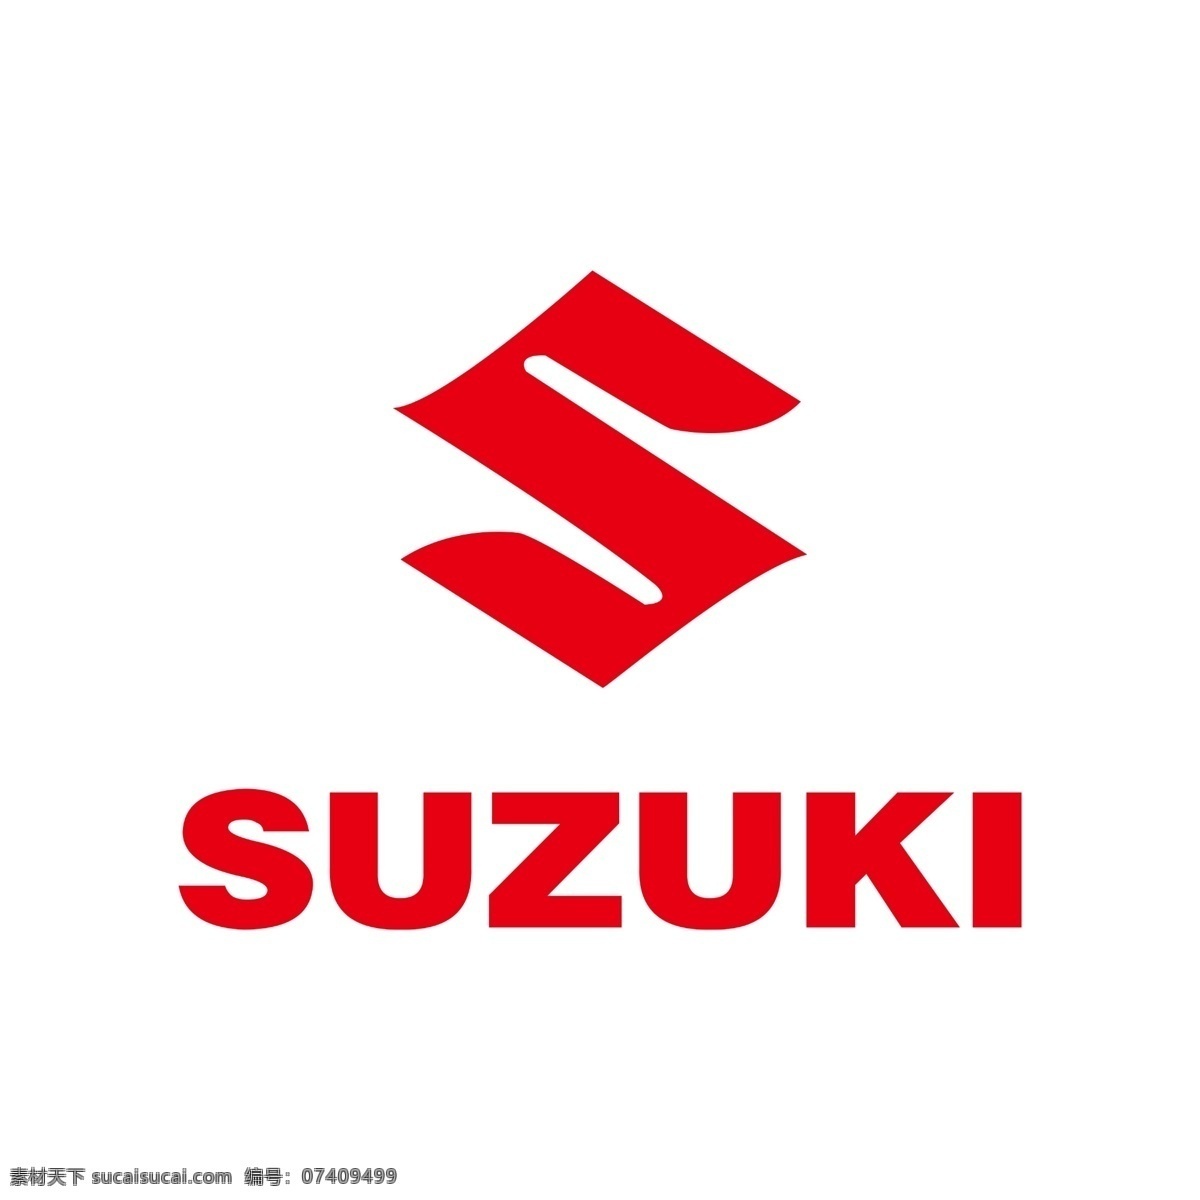 铃木图片 铃木标志 铃木 铃木标识 铃木logo 企业logo